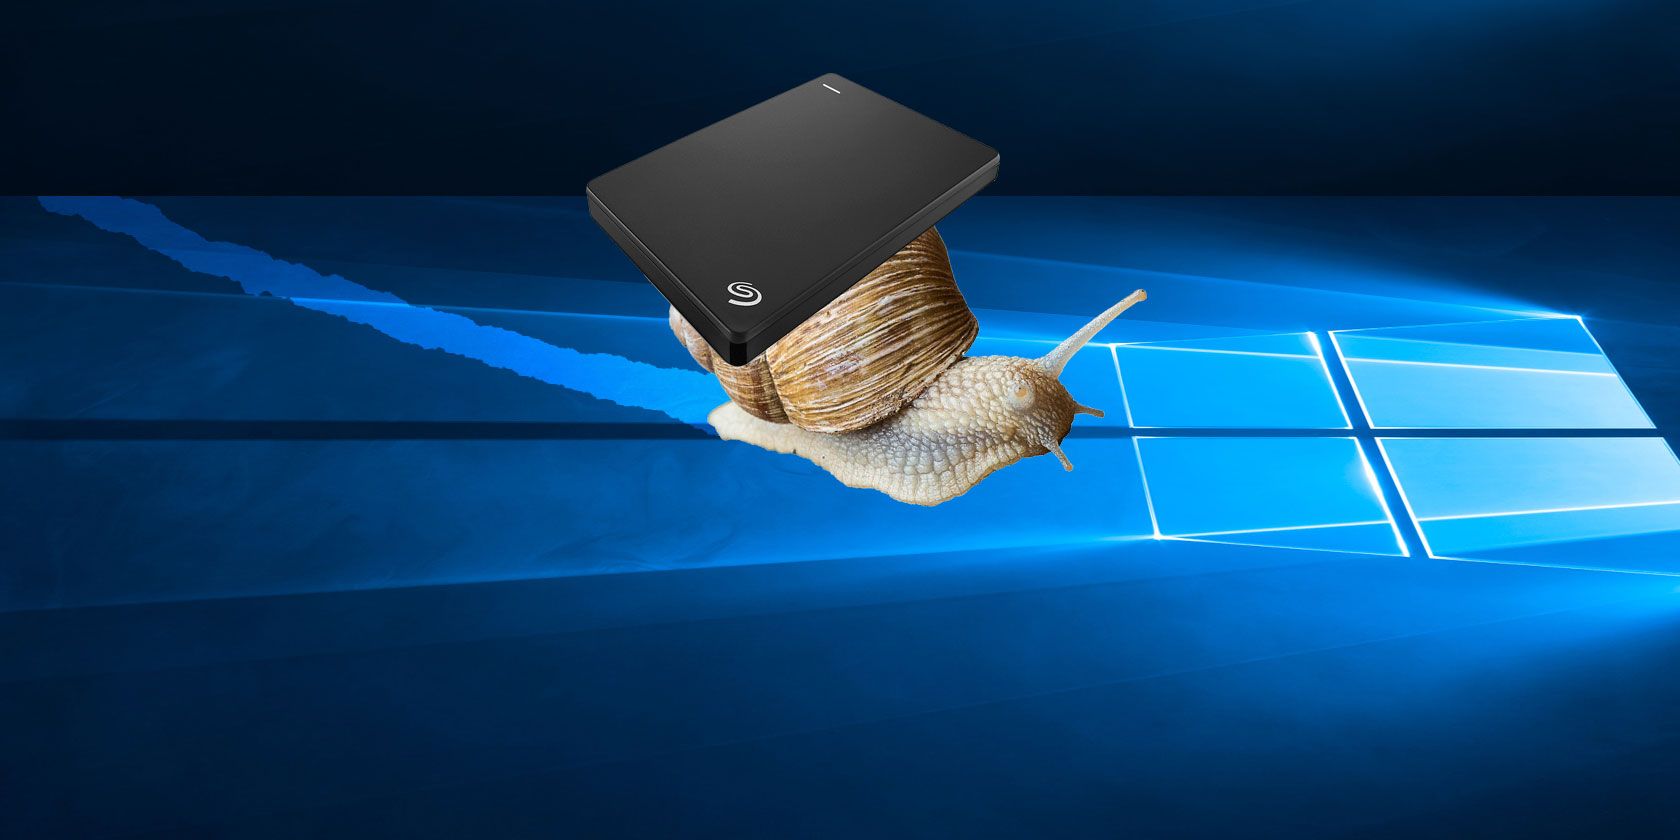 slow external hdd - Come riparare un disco rigido esterno lento in Windows 10